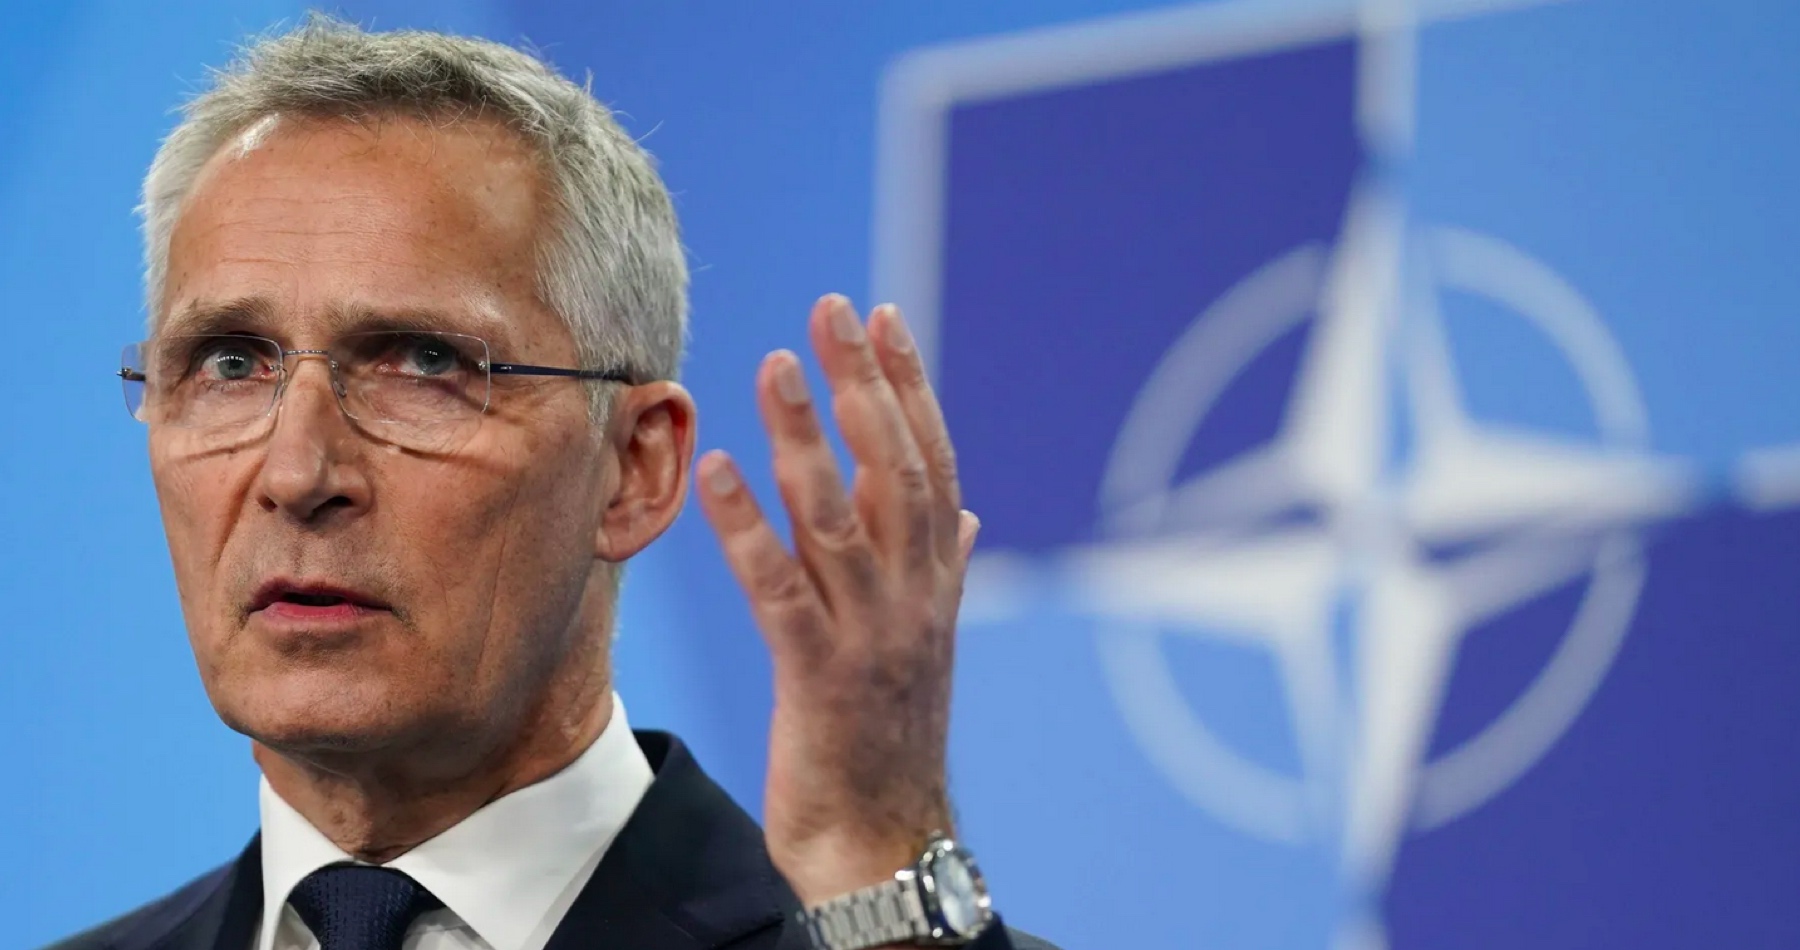 Šéf NATO Stoltenberg namiesto snáh deeskalovať napätie a úsilia rokovať o mieri vyzýva spojencov rýchlejšie zvyšovať výdavky na zbrojenie